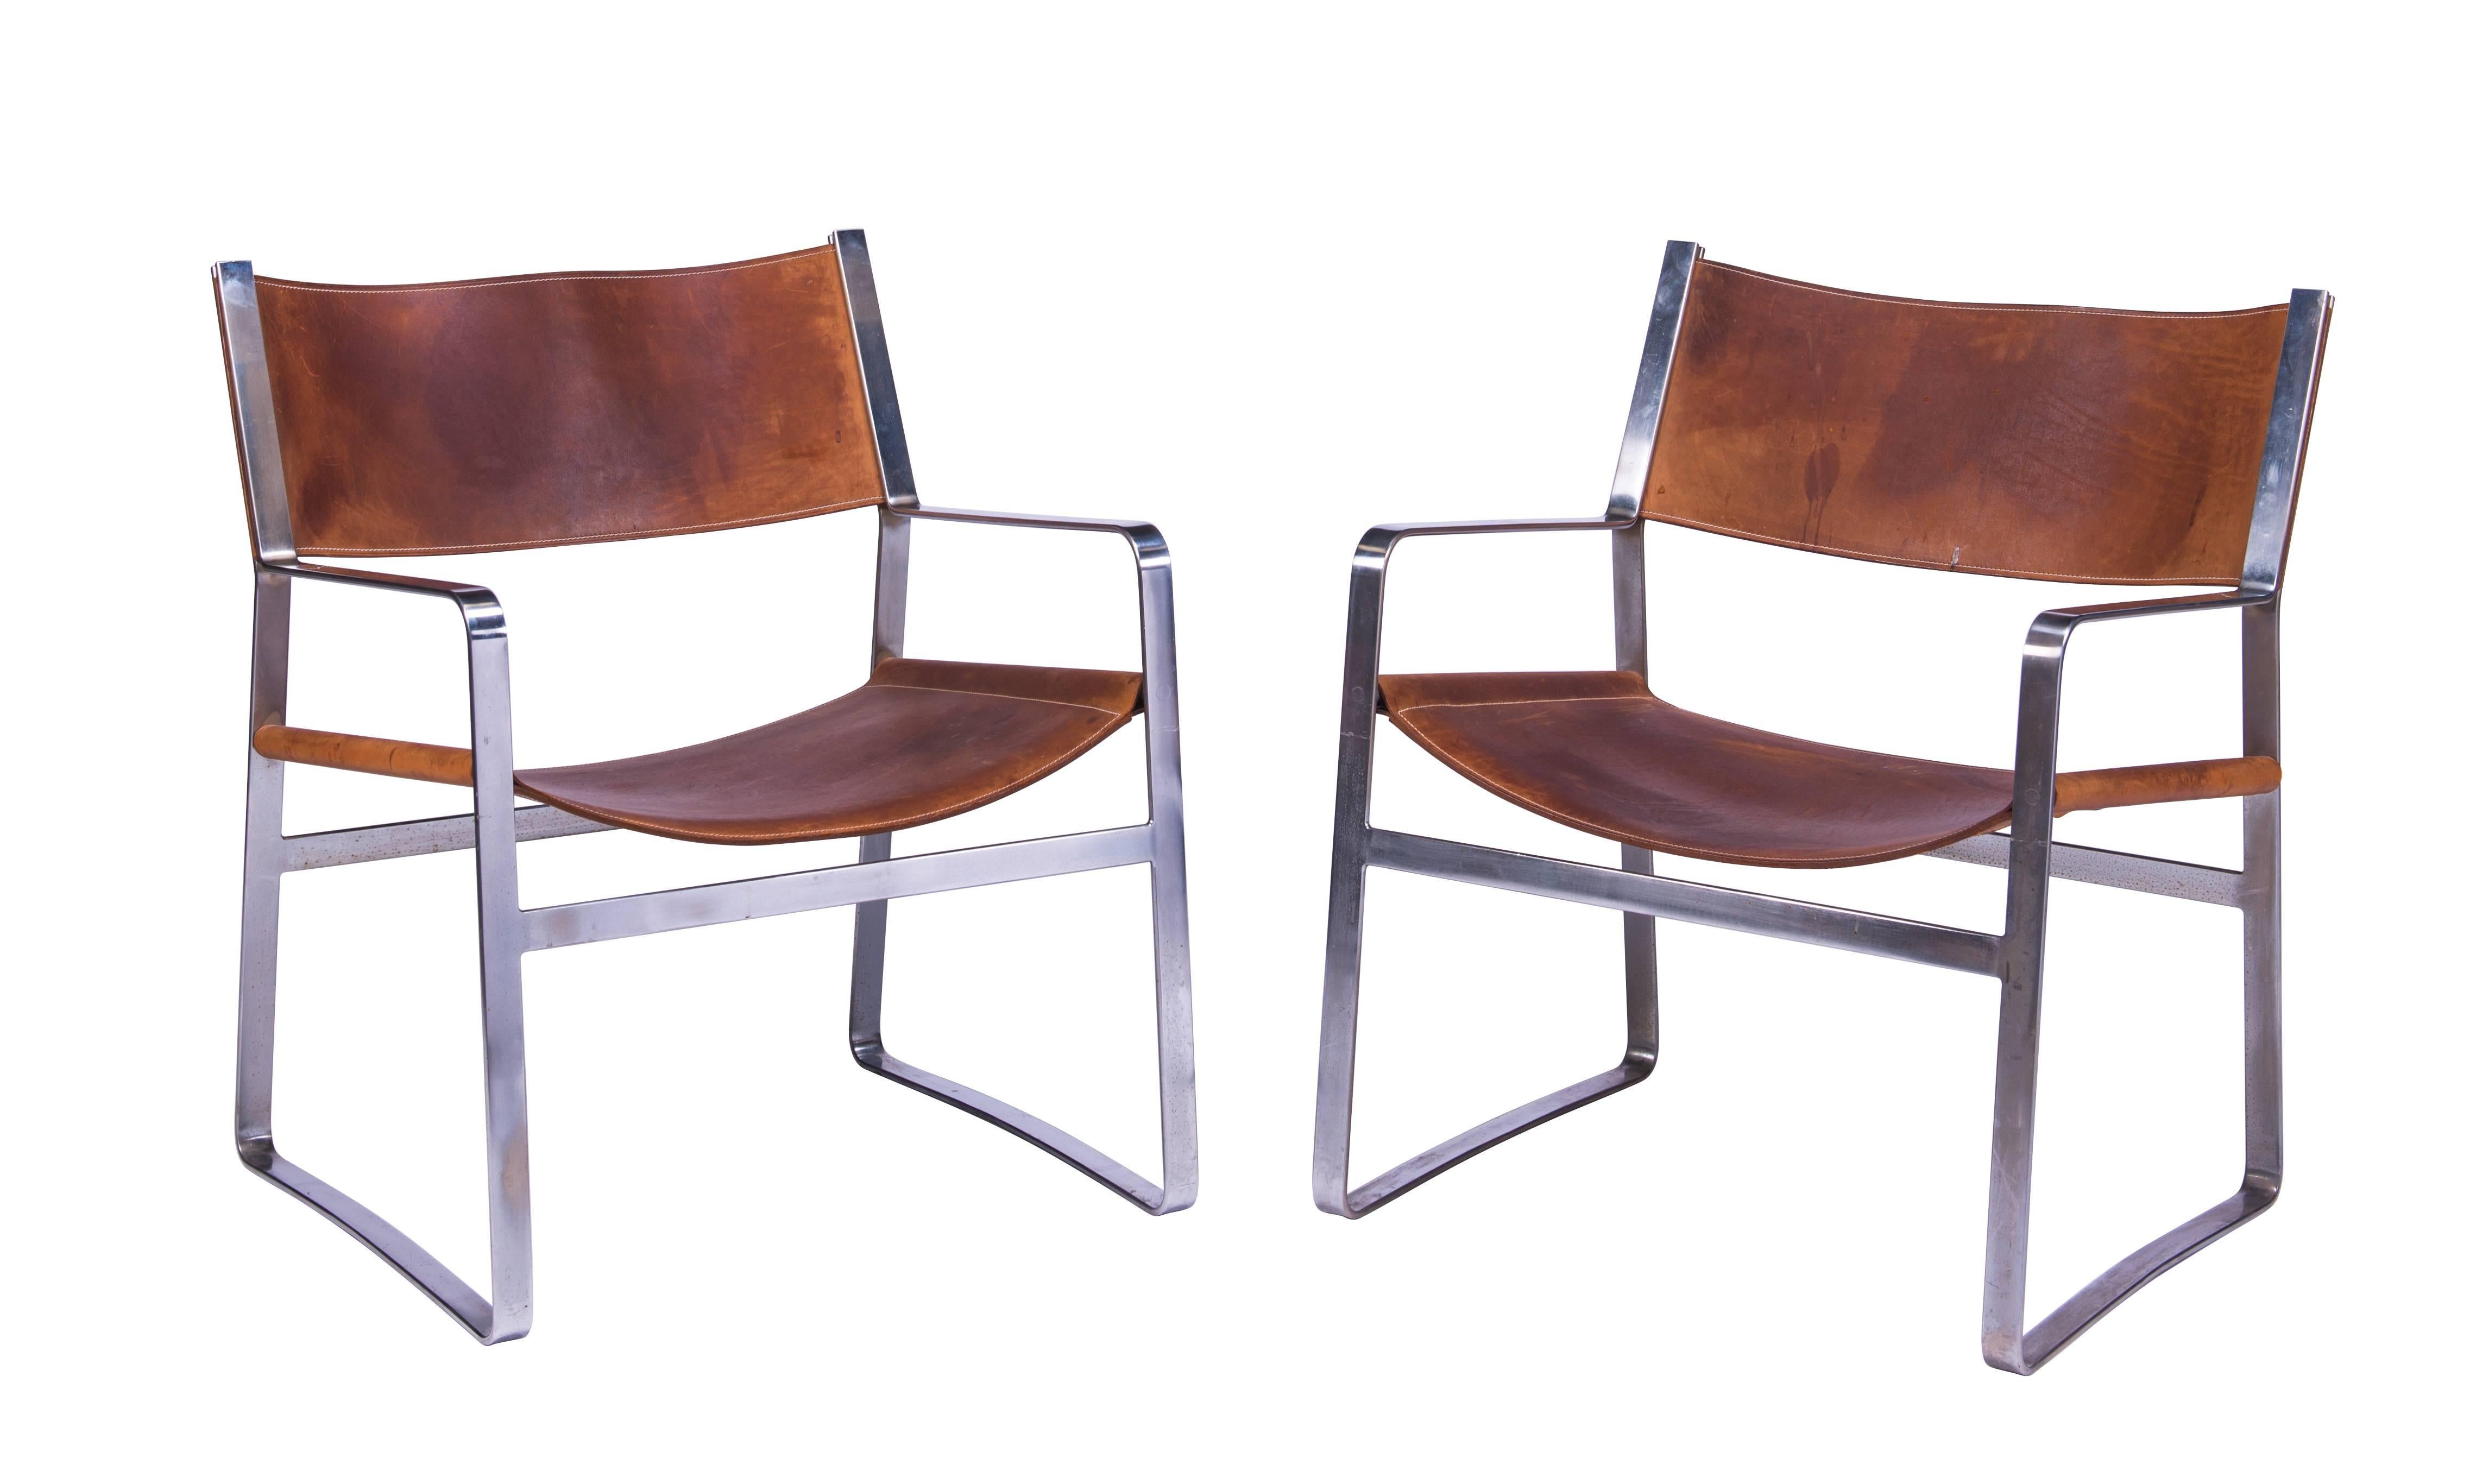 Sehr seltenes und gut verarbeitetes Paar Wegner Sessel Modell JH 812 aus verchromtem Stahl mit originalem Sattelleder, um 1970. Dokumentiert in Hans J. Wegner's 100 Chairs, Oda, S. 191. Schöne natürliche Patina auf Ledersitzen und -lehnen.